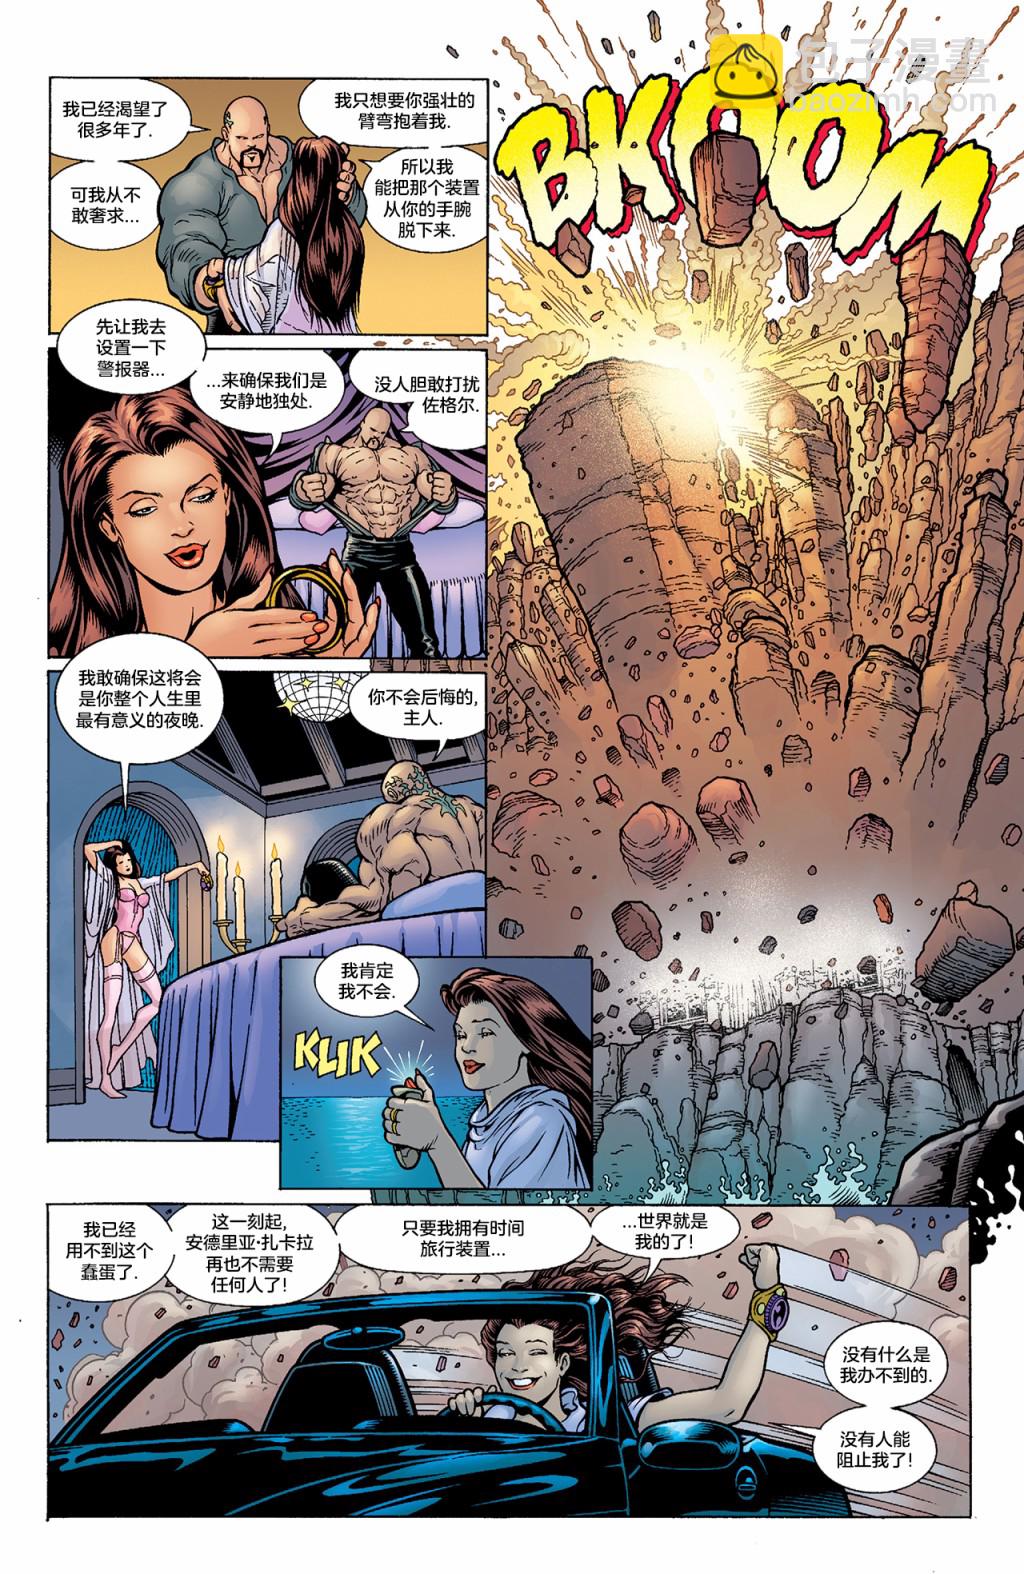 試想一下斯坦李的DC宇宙 - 閃電俠 - 8